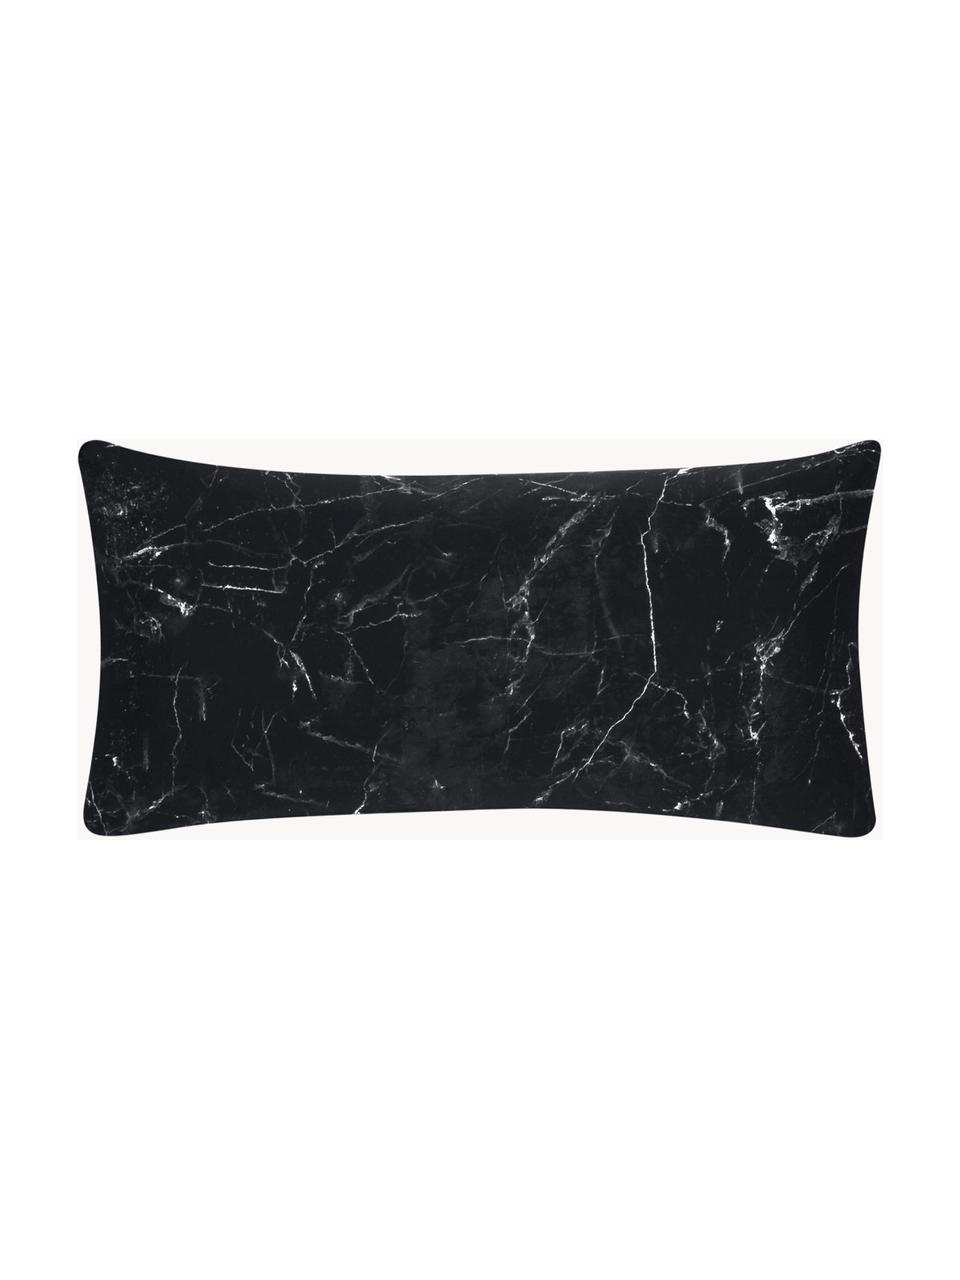 Poszewka na poduszkę z bawełny Malin, 2 szt., Czarny, biały, S 40 x D 80 cm